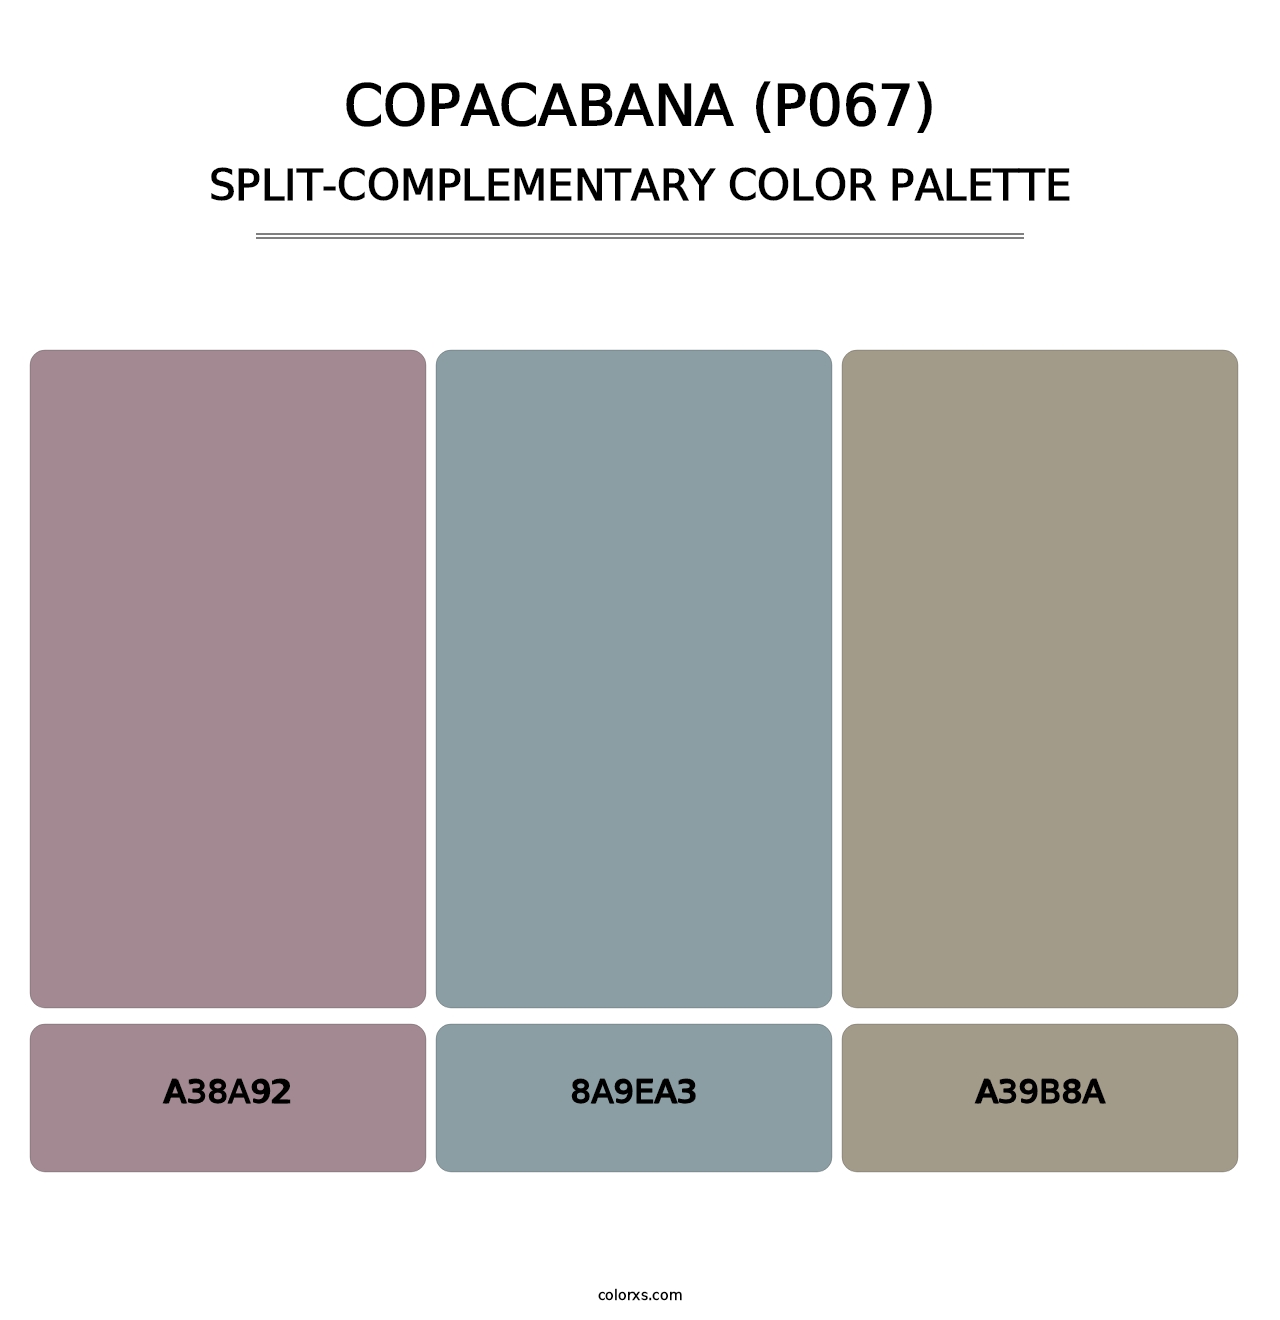 Copacabana (P067) - Split-Complementary Color Palette